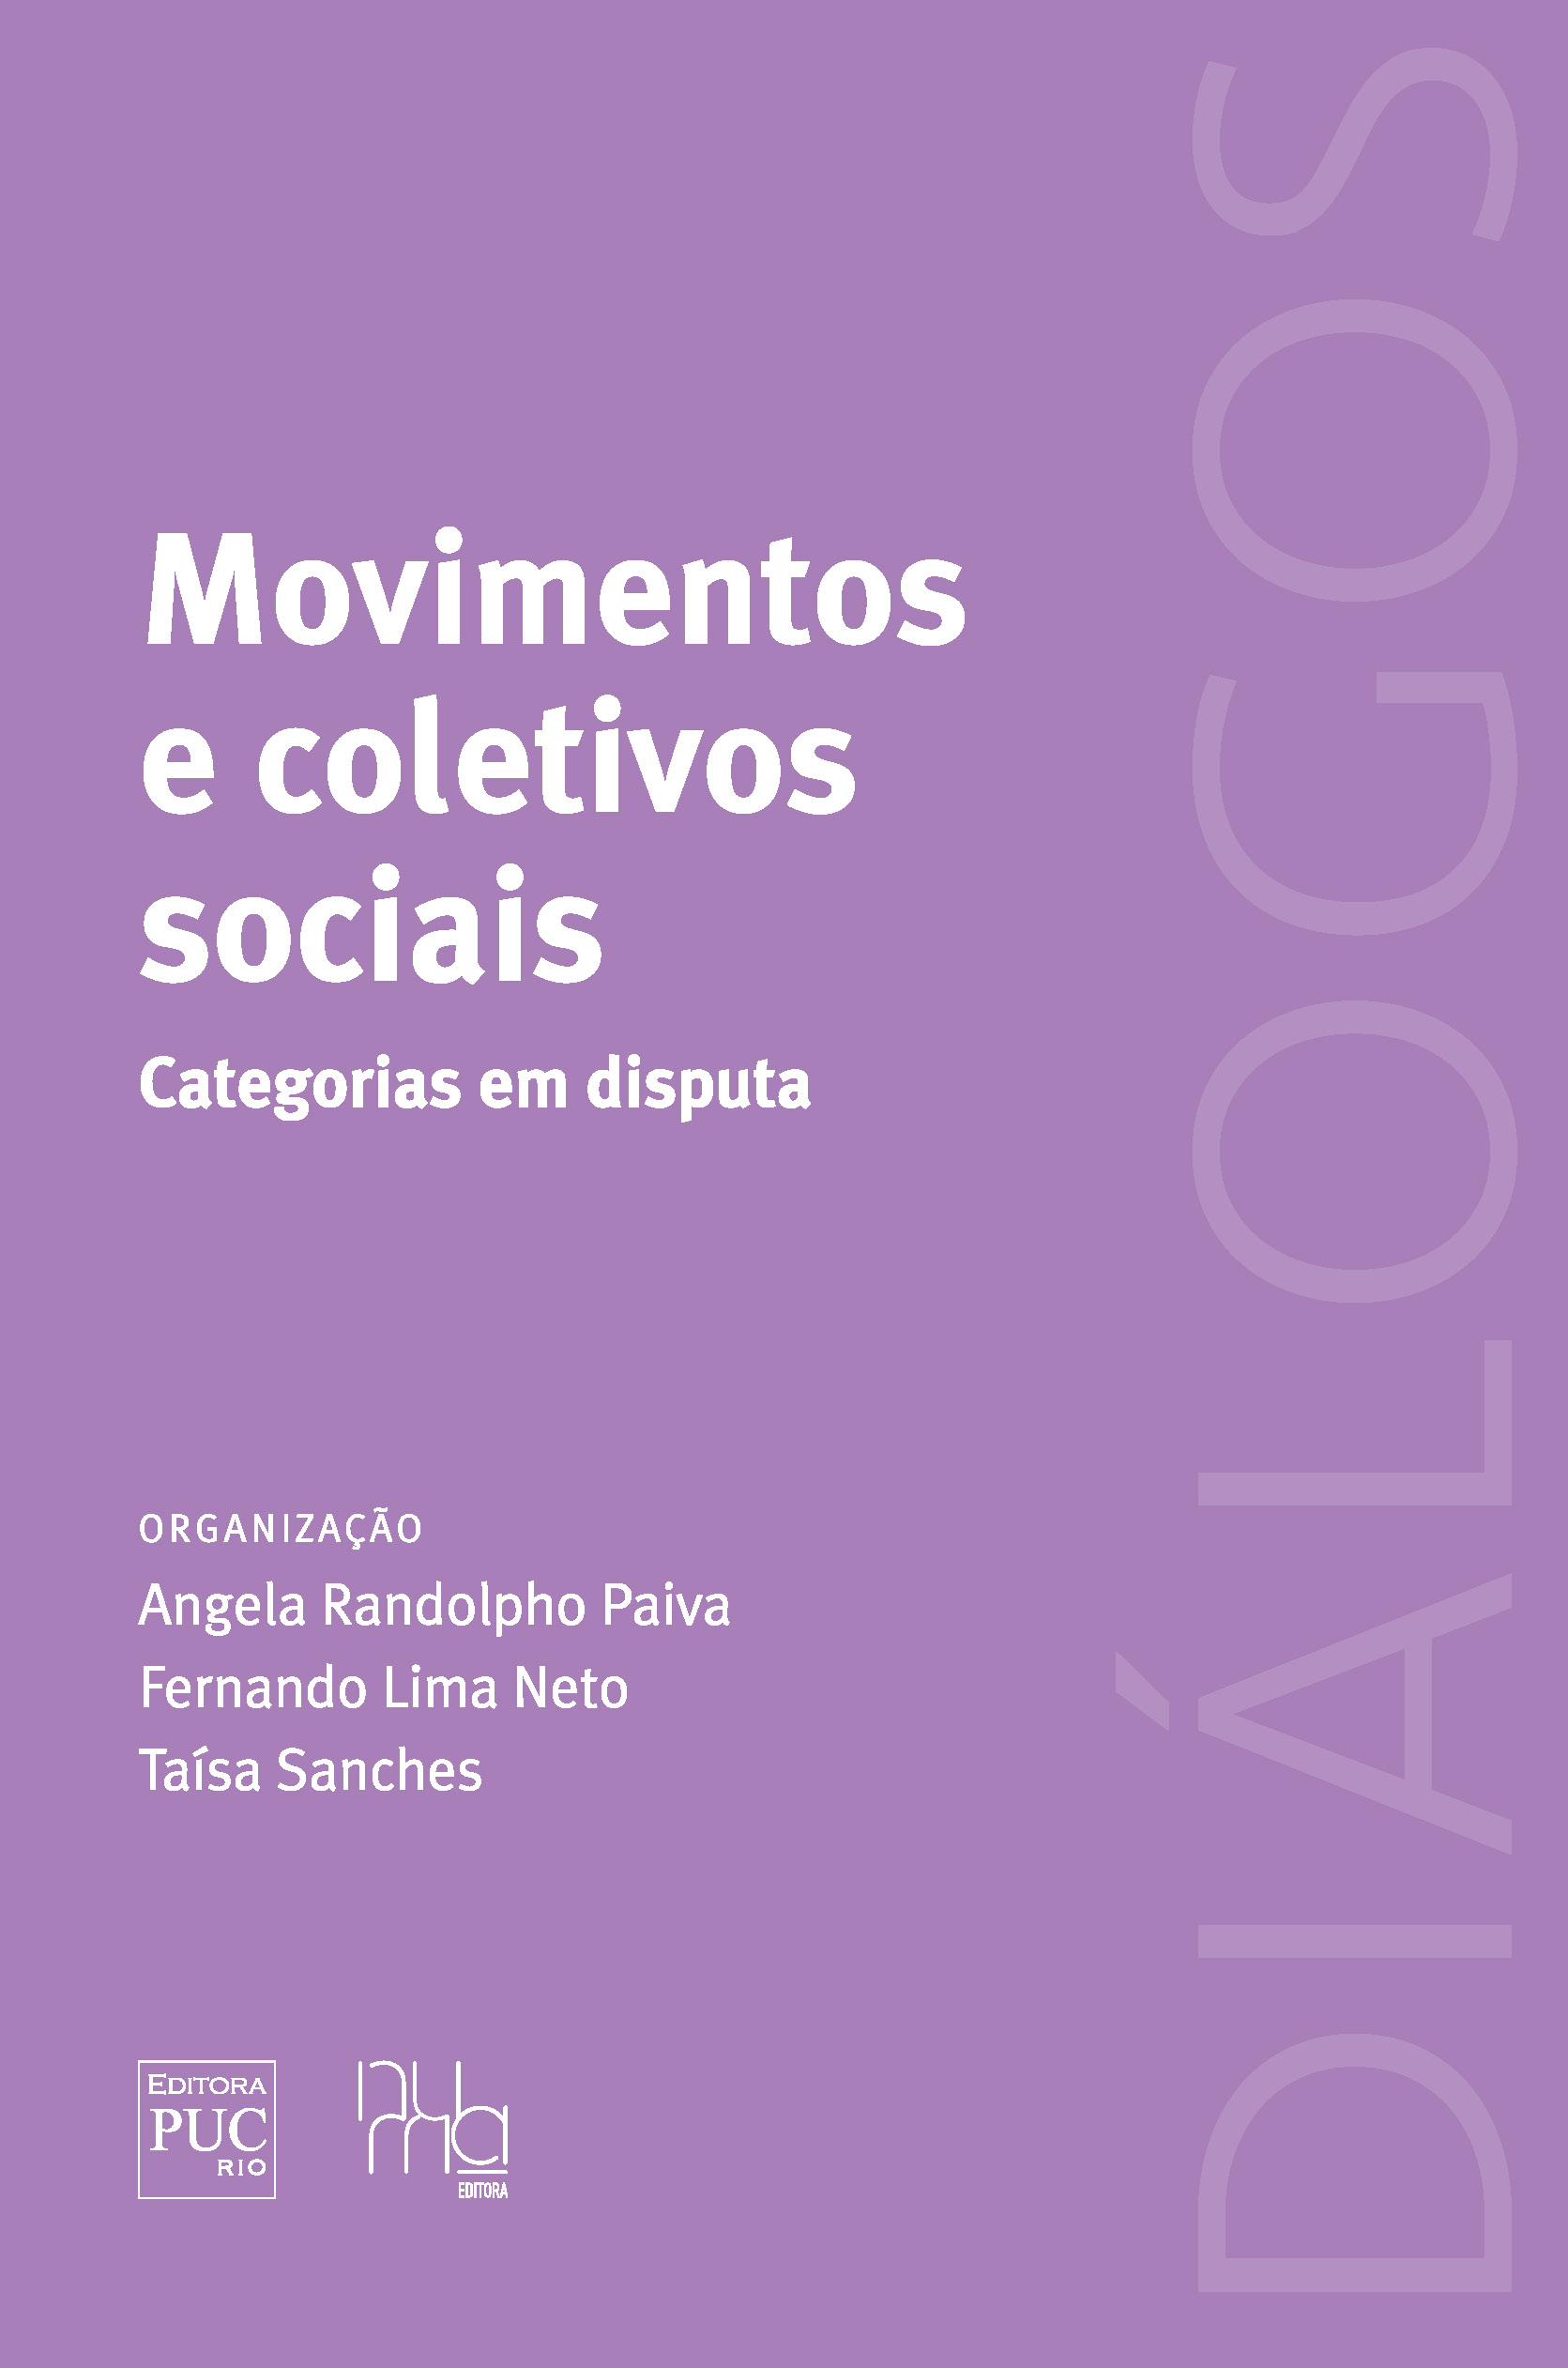 Movimentos e coletivos sociais: categorias em disputa